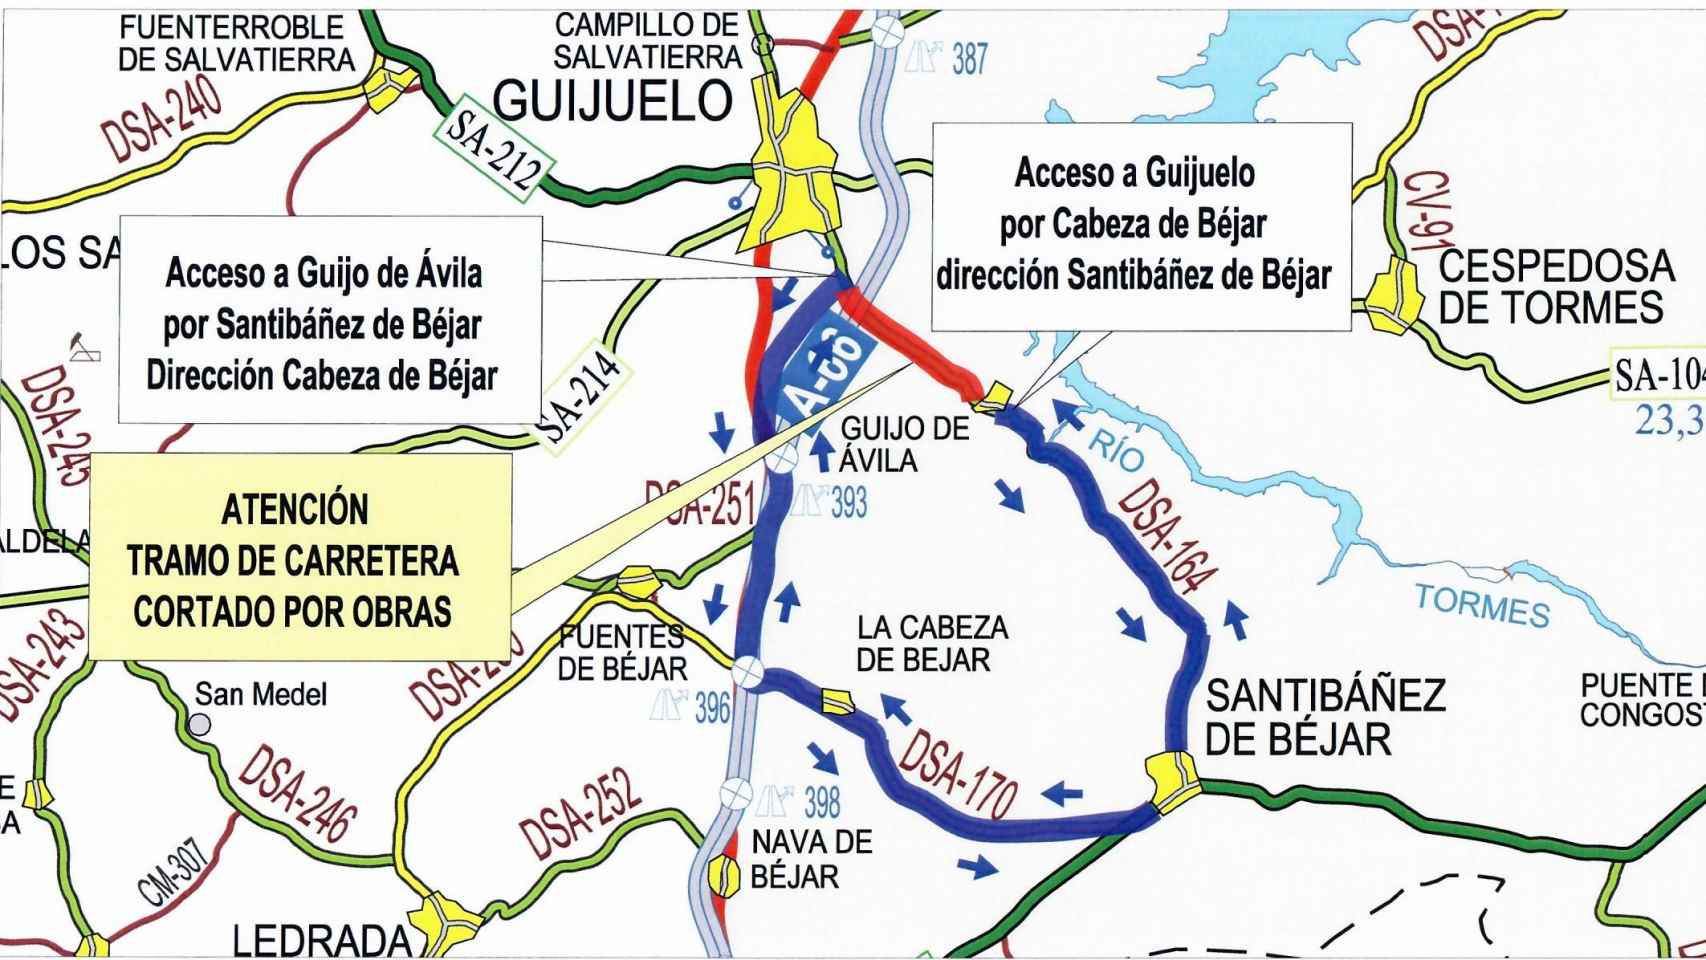 La carretera DSA-164, entre Guijuelo y Guijo de Ávila, cortada por obras hasta febrero de 2022